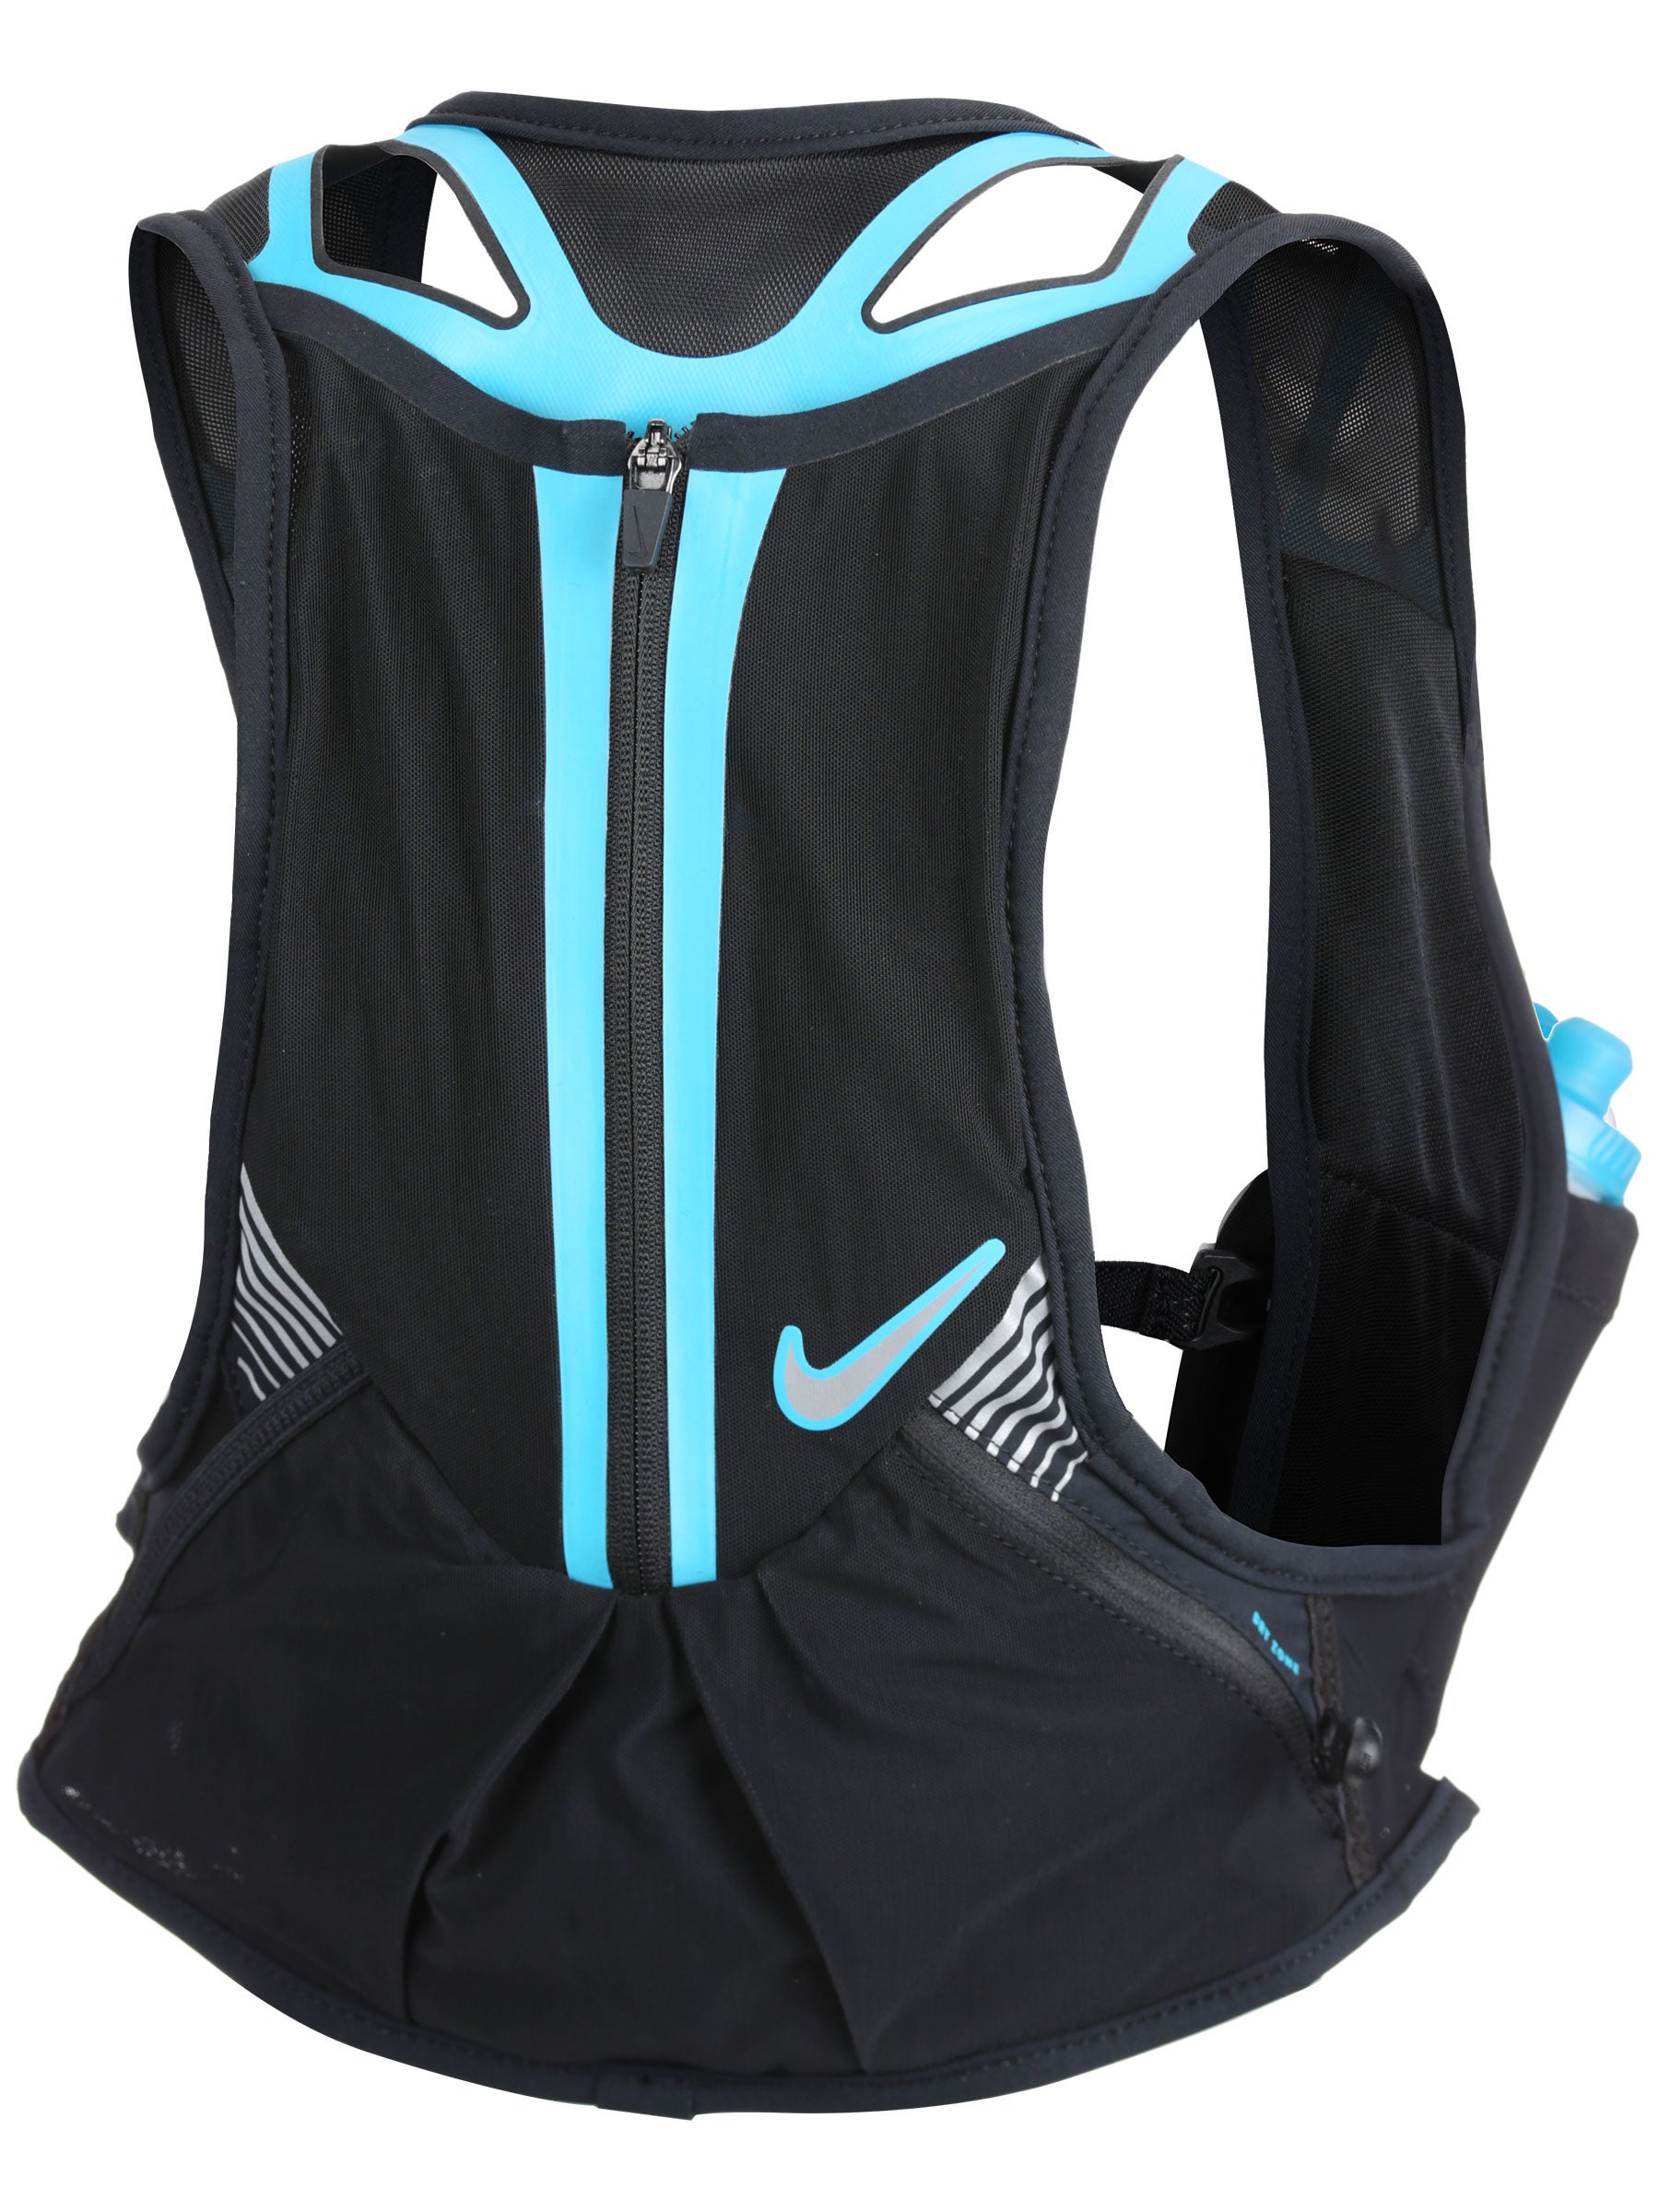 Vest 3. Nike Trail Vest. Nike men's Running Trail Vest Pure Platinum/hasta/Dark Cayenne/Laser Blue l, жилет для бега купить.